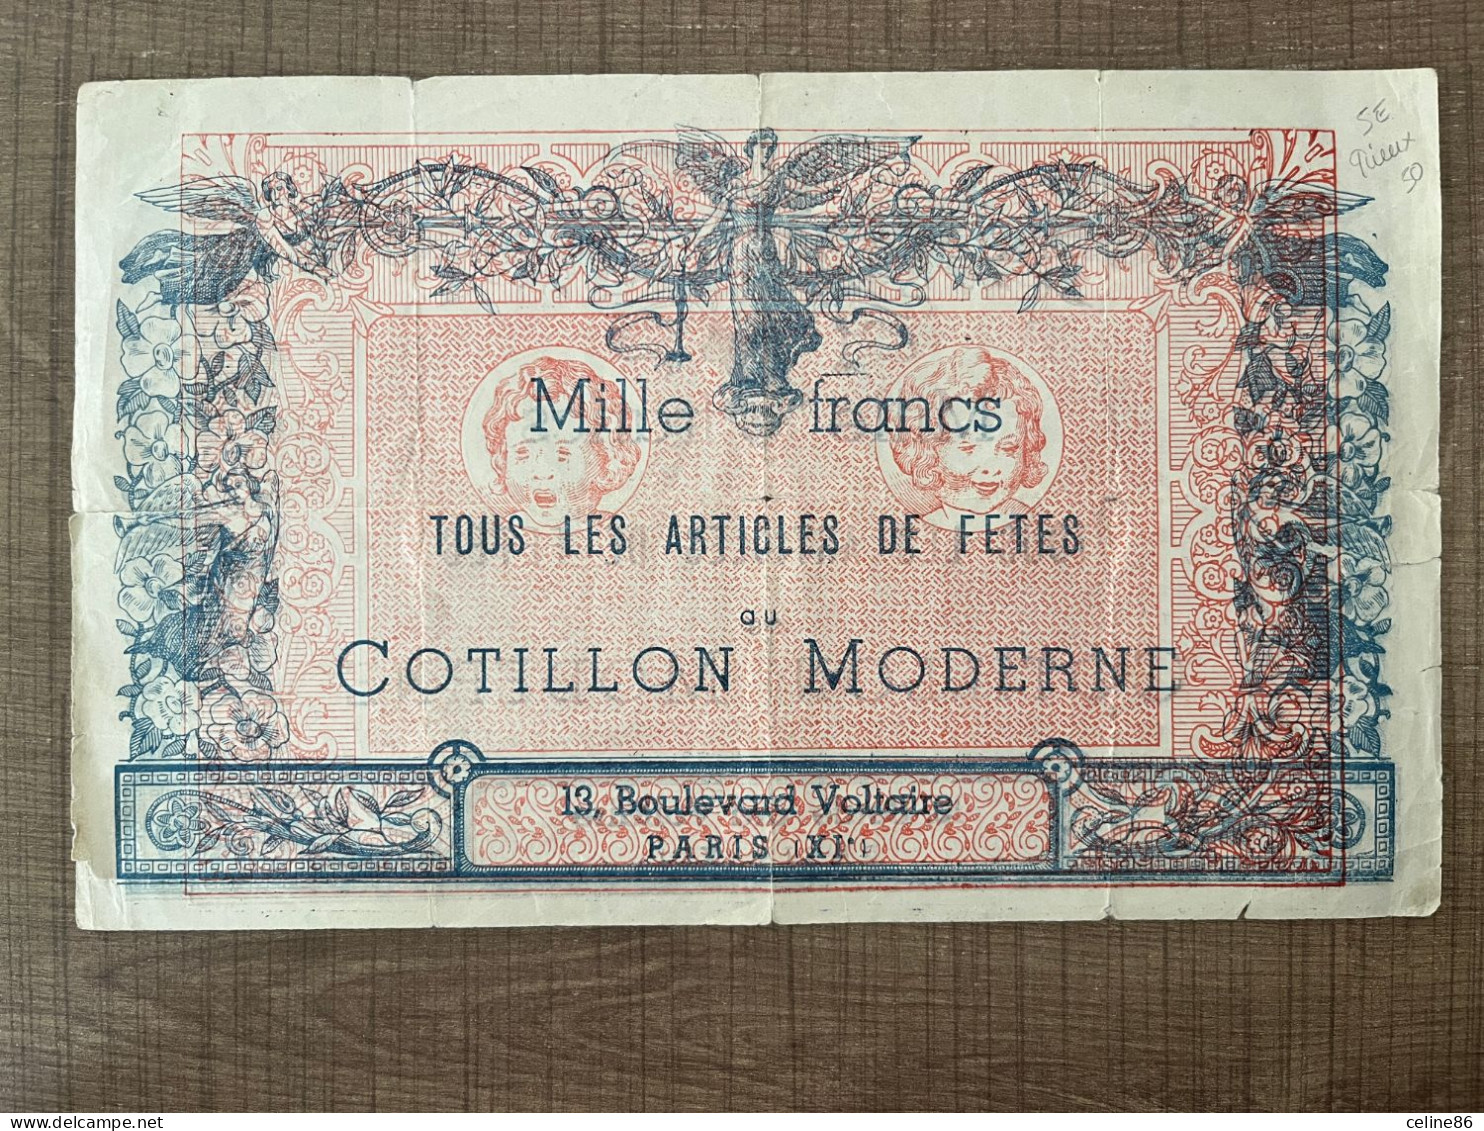 Mille Francs Tous Les Articles De Fetes Cotillon Moderne - Werbung